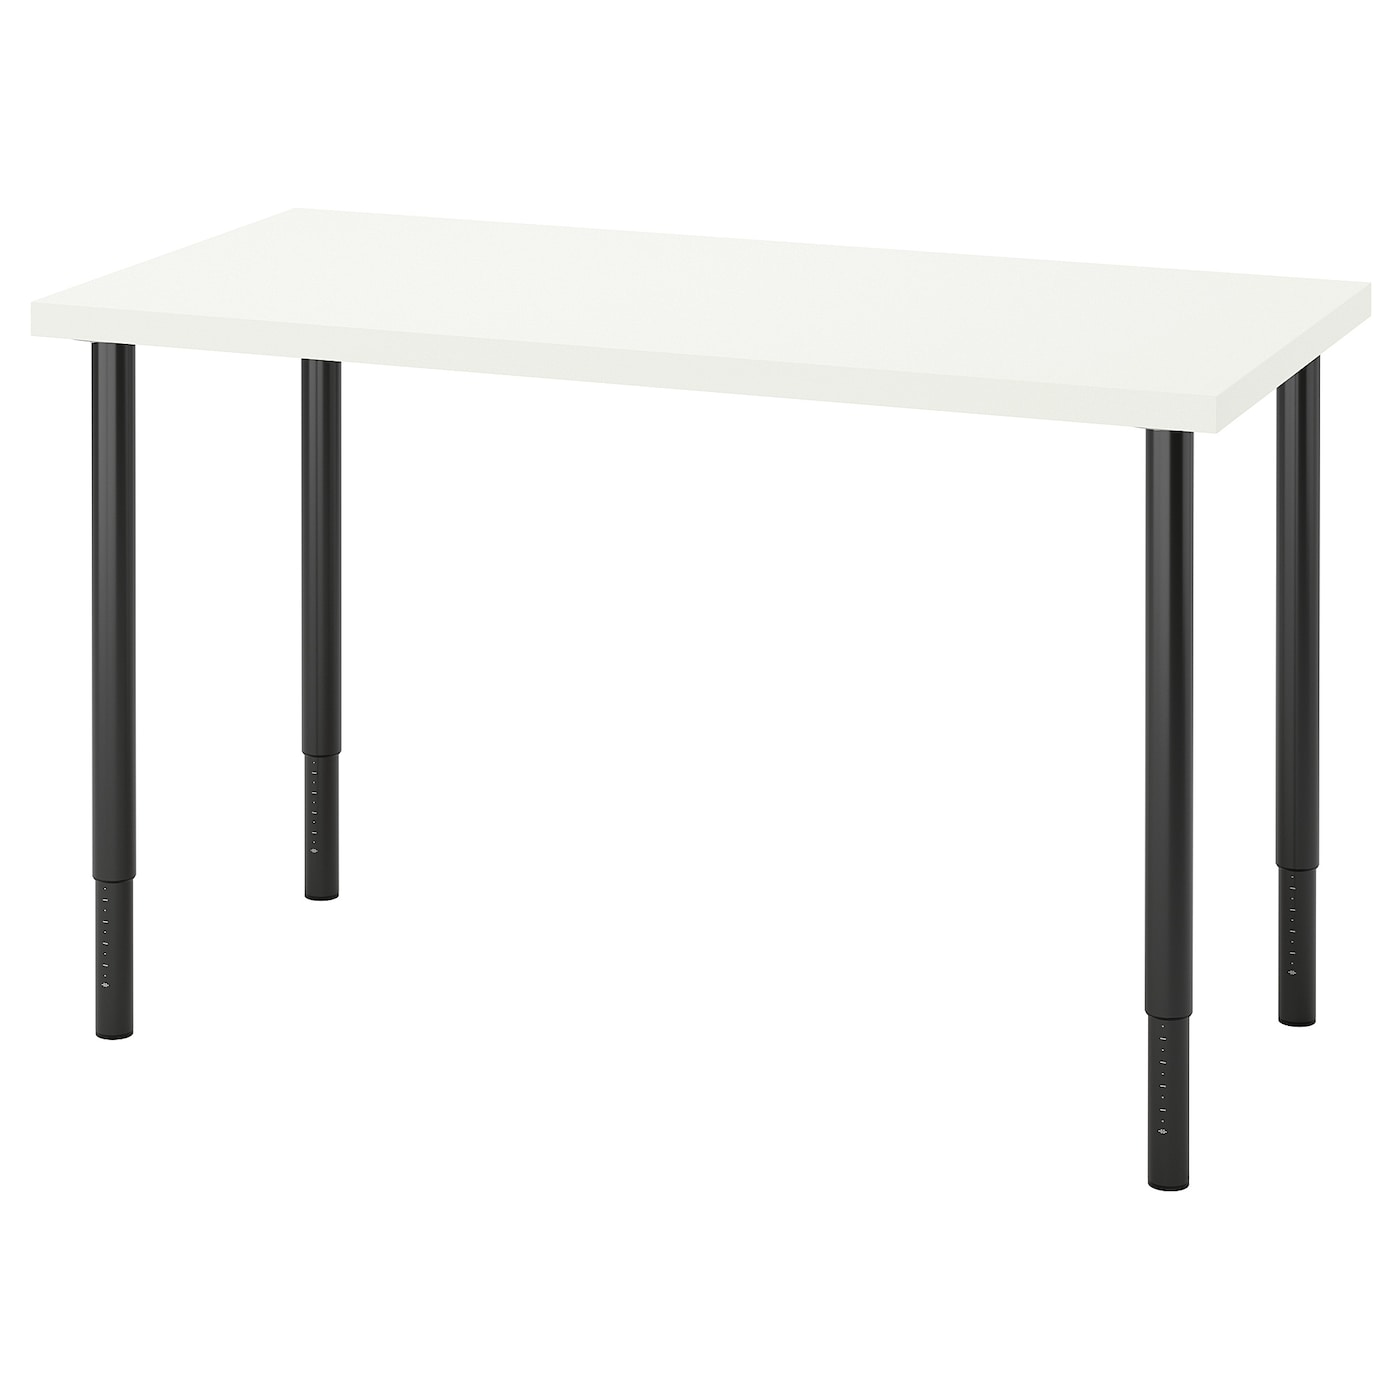 Письменный стол - IKEA LAGKAPTEN/OLOV, 120х60х63-93 см, белый/черный, ЛАГКАПТЕН/ОЛОВ ИКЕА